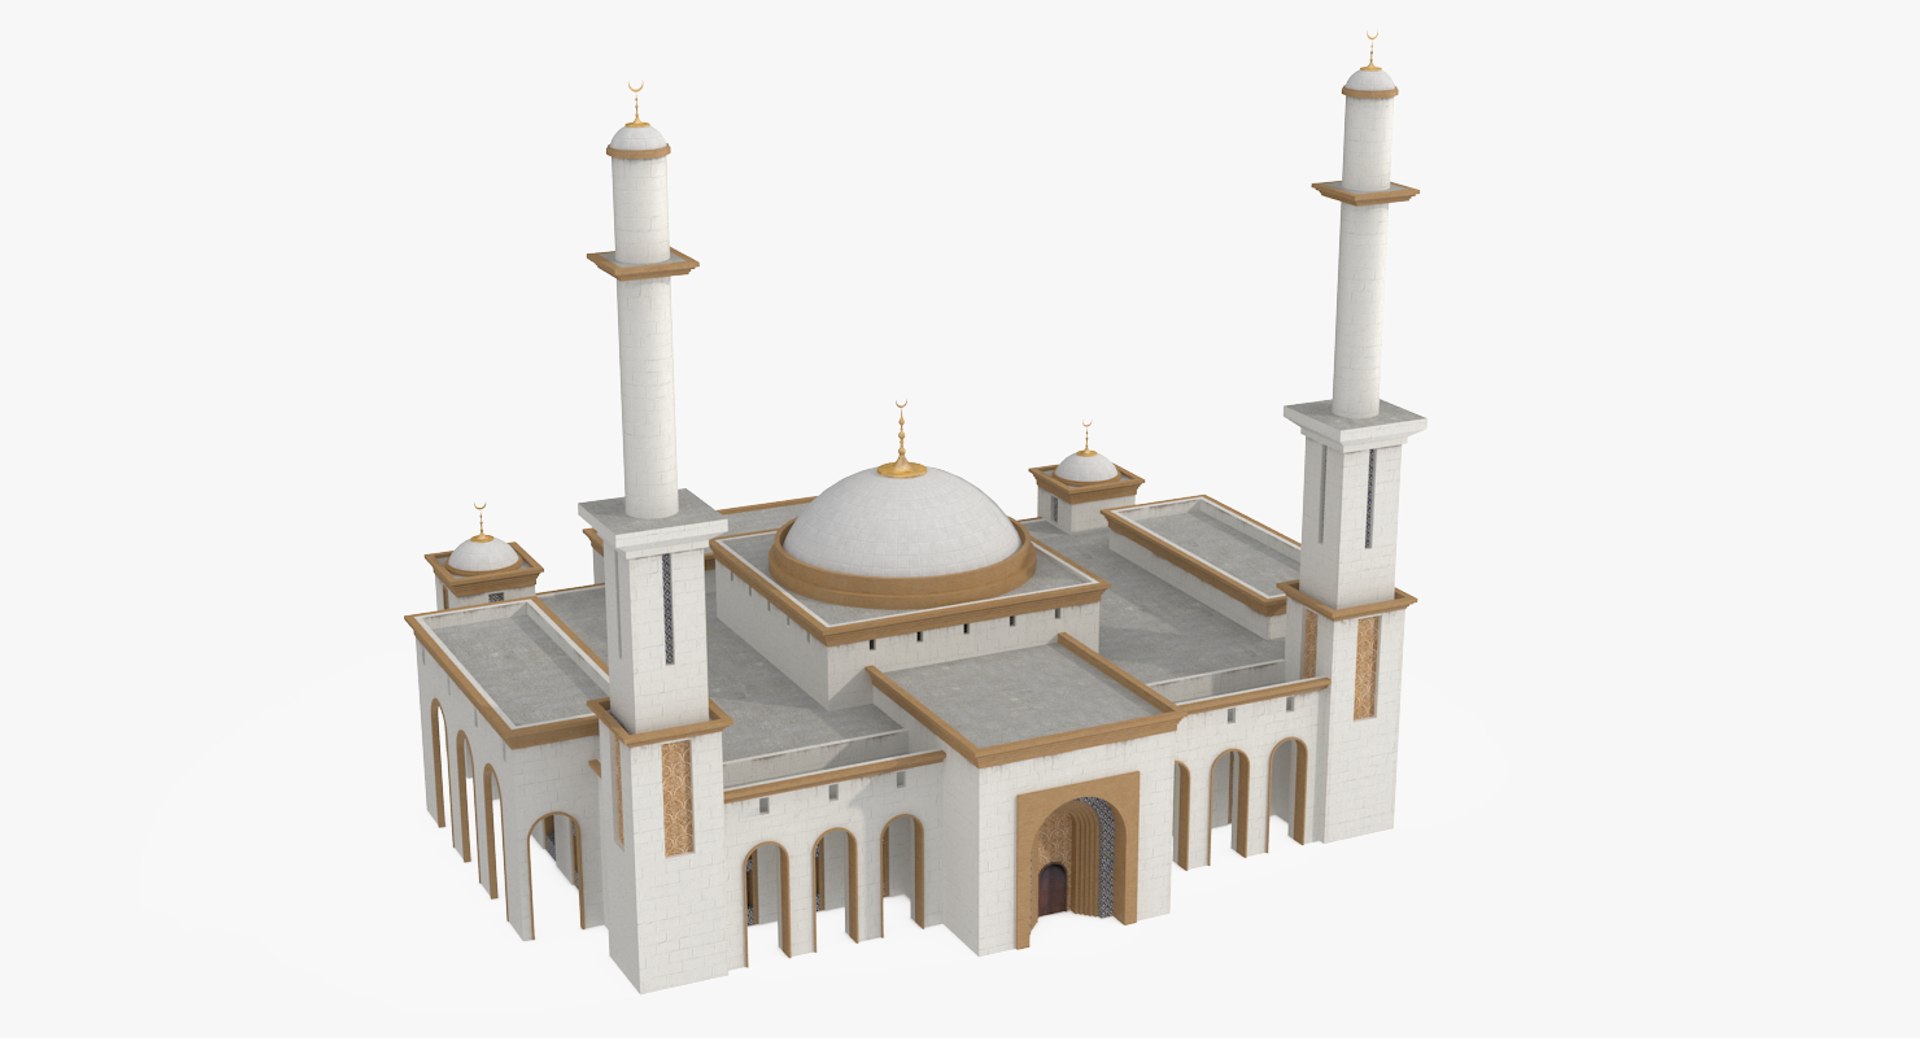 mosque 3D model https://p.turbosquid.com/ts-thumb/Gk/IHVyYr/EhUuIcAZ/mosque_a_c1/png/1494022403/1920x1080/fit_q87/a49332a816ccf40c420f98dbb92d62b88e7bf61a/mosque_a_c1.jpg